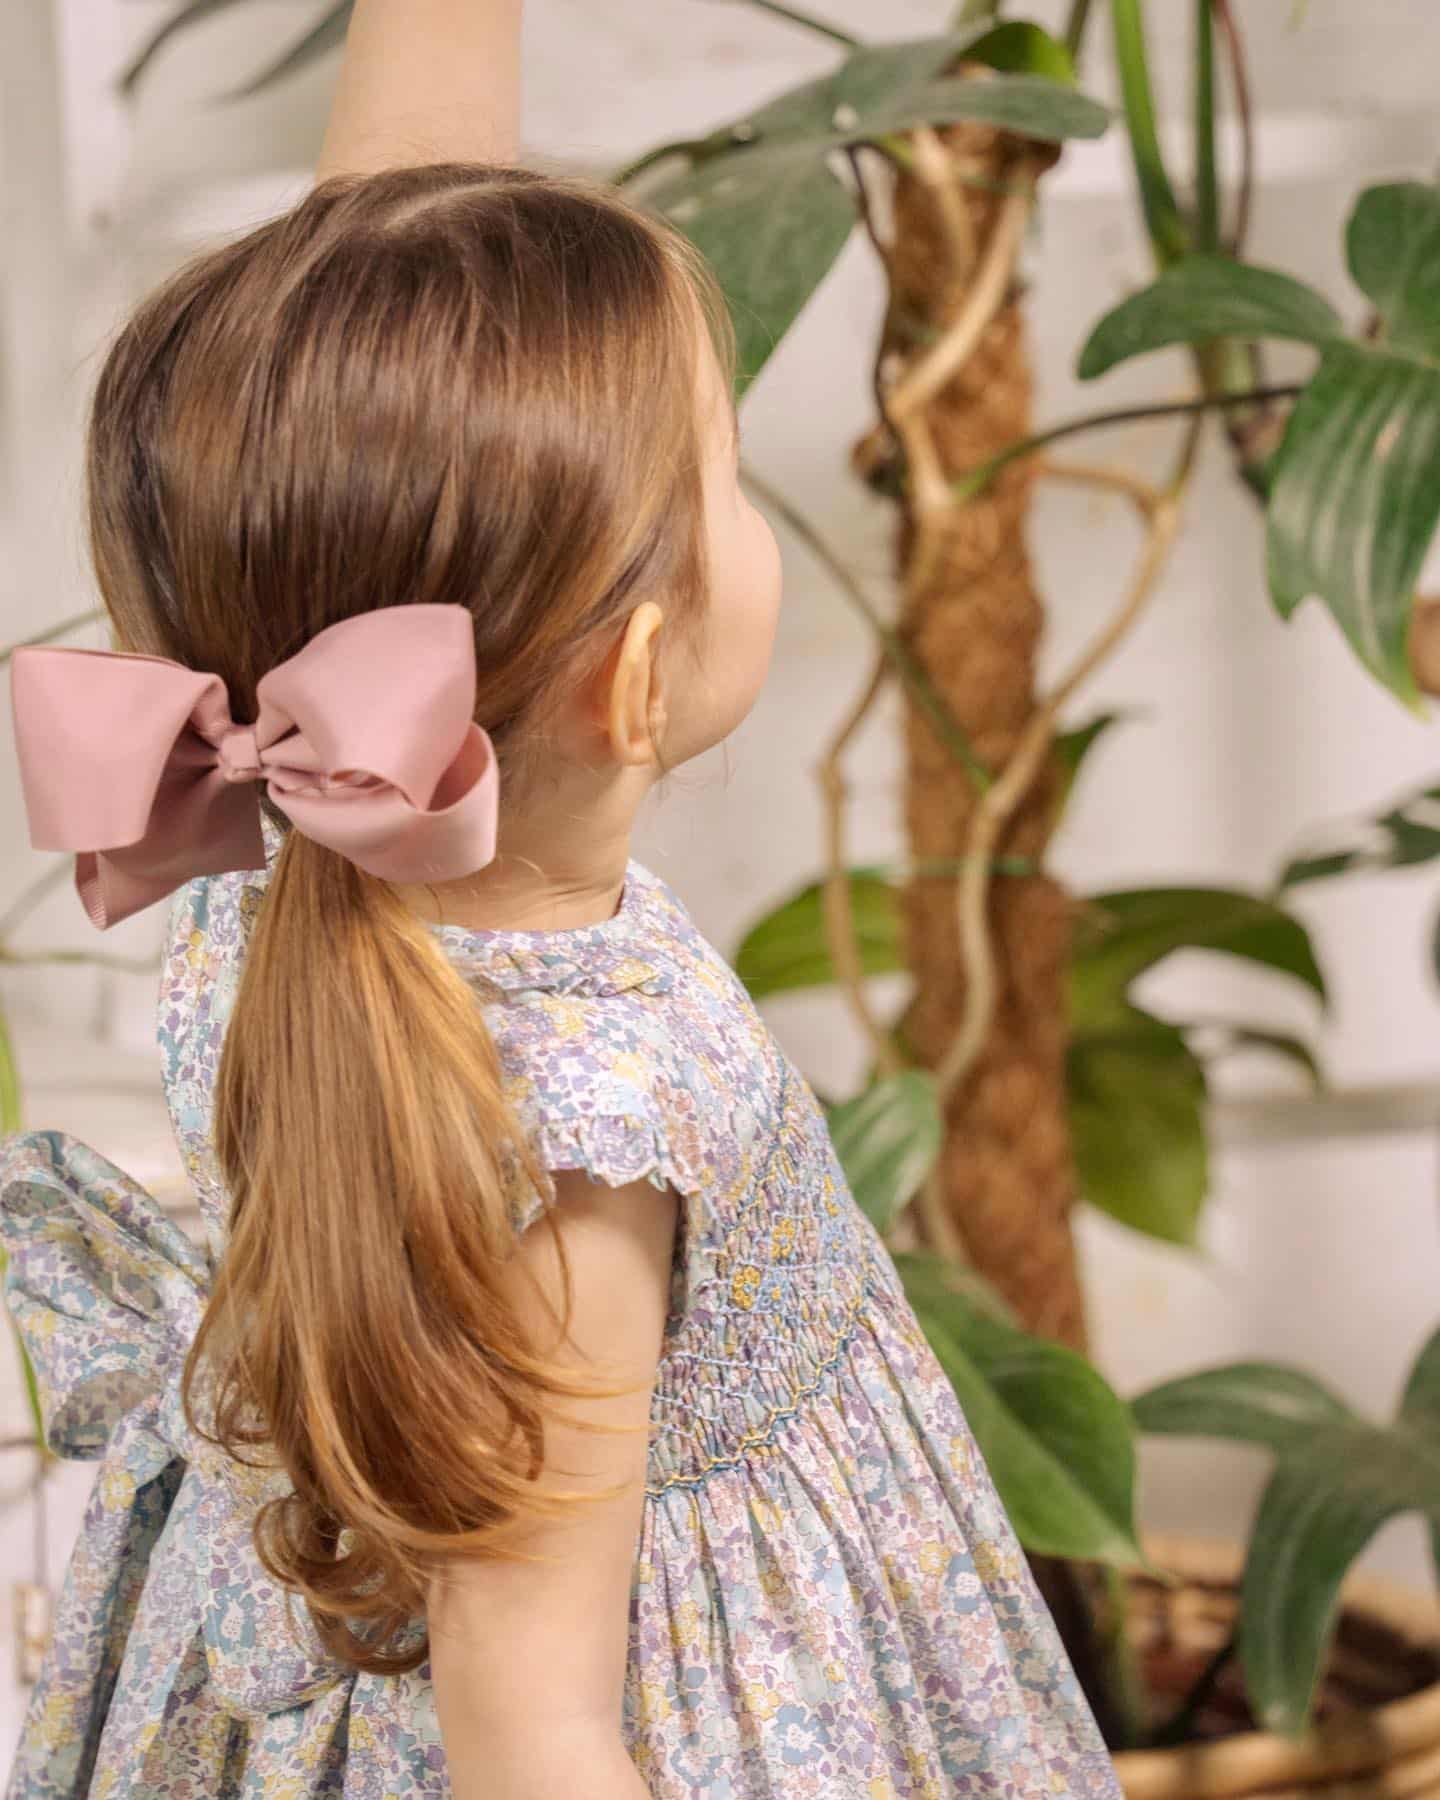 ヘアクリップ📸Dusty Pink特大サイズのヘアクリップシャーロット王女が赤ちゃんの頃に同じDusty Pinkの小サイズのヘアクリップをご着用されアマイアキッズヘアアクセサリーの大人気カラーに上品なくすみピンクが女の子のスタイリングを仕上げてくれます贈り物にはヘアアクセサリー専用ギフトボックスをご利用ください@bonitatokyo︎ONLINE STOREhttps://bonitatokyo.com